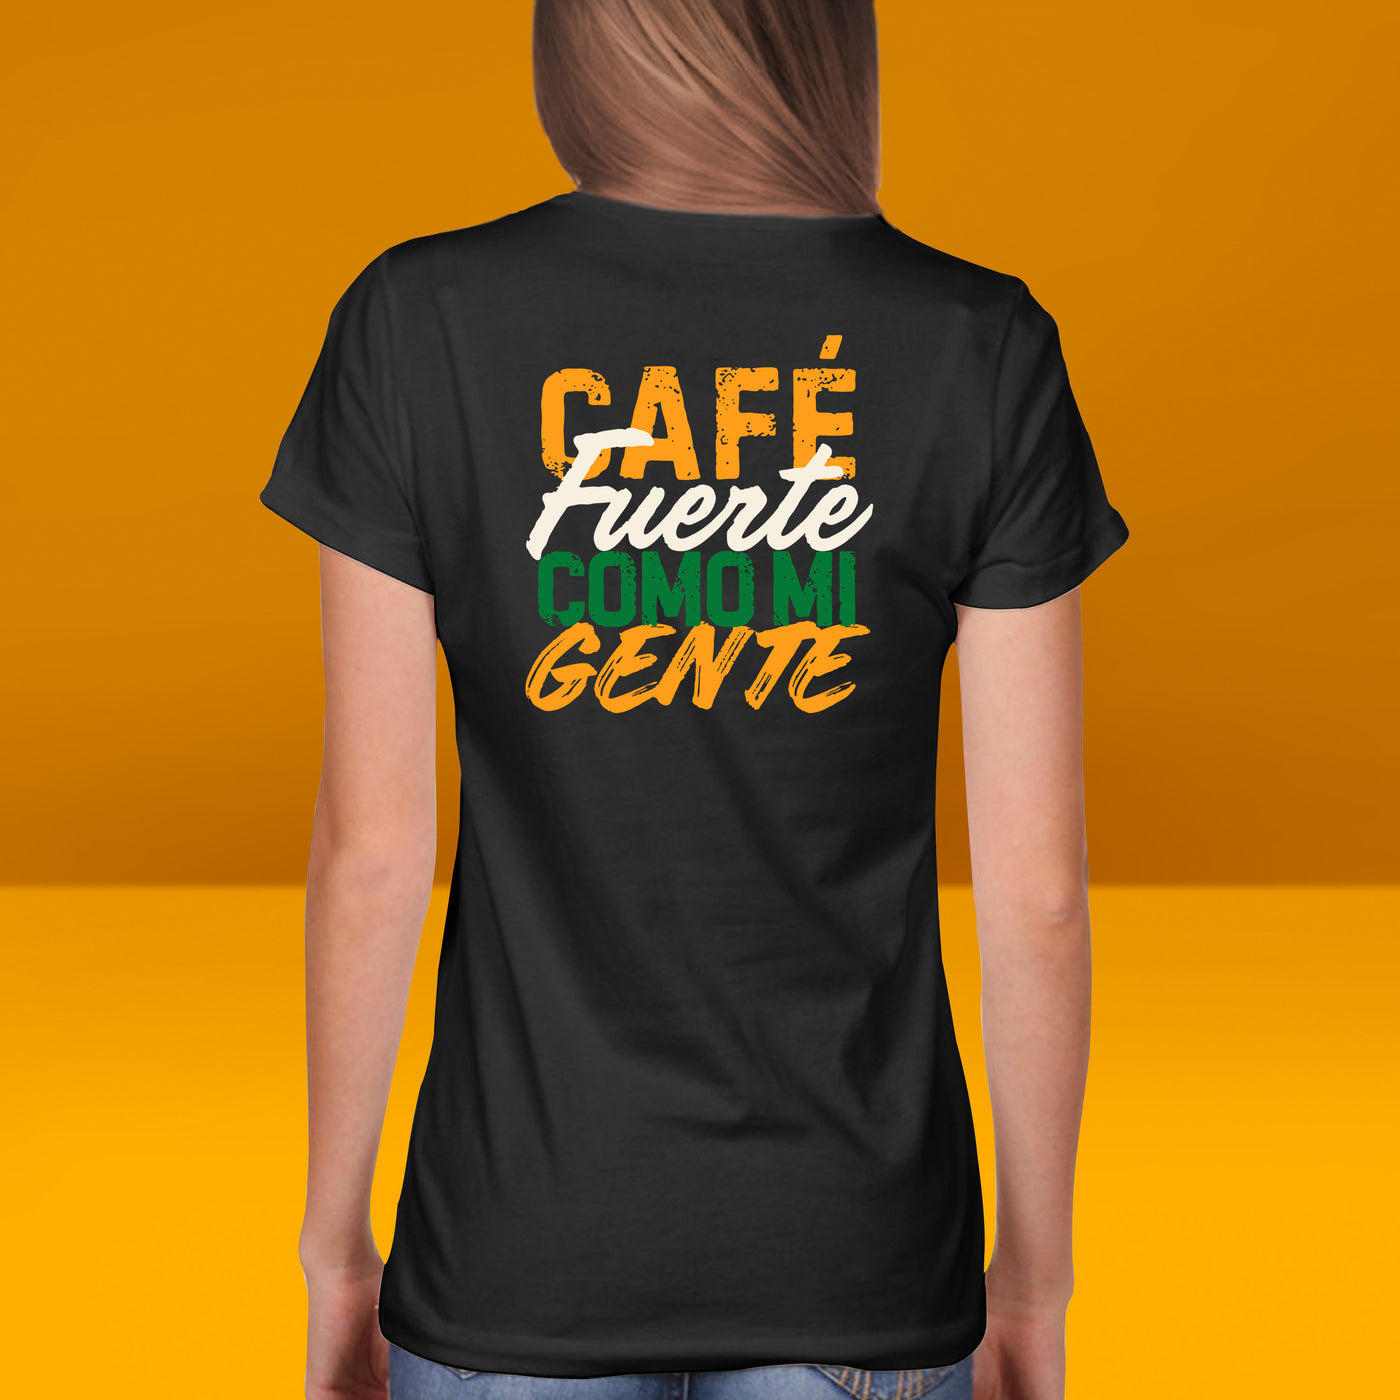 Café Fuerte Como mi Gente T-Shirt